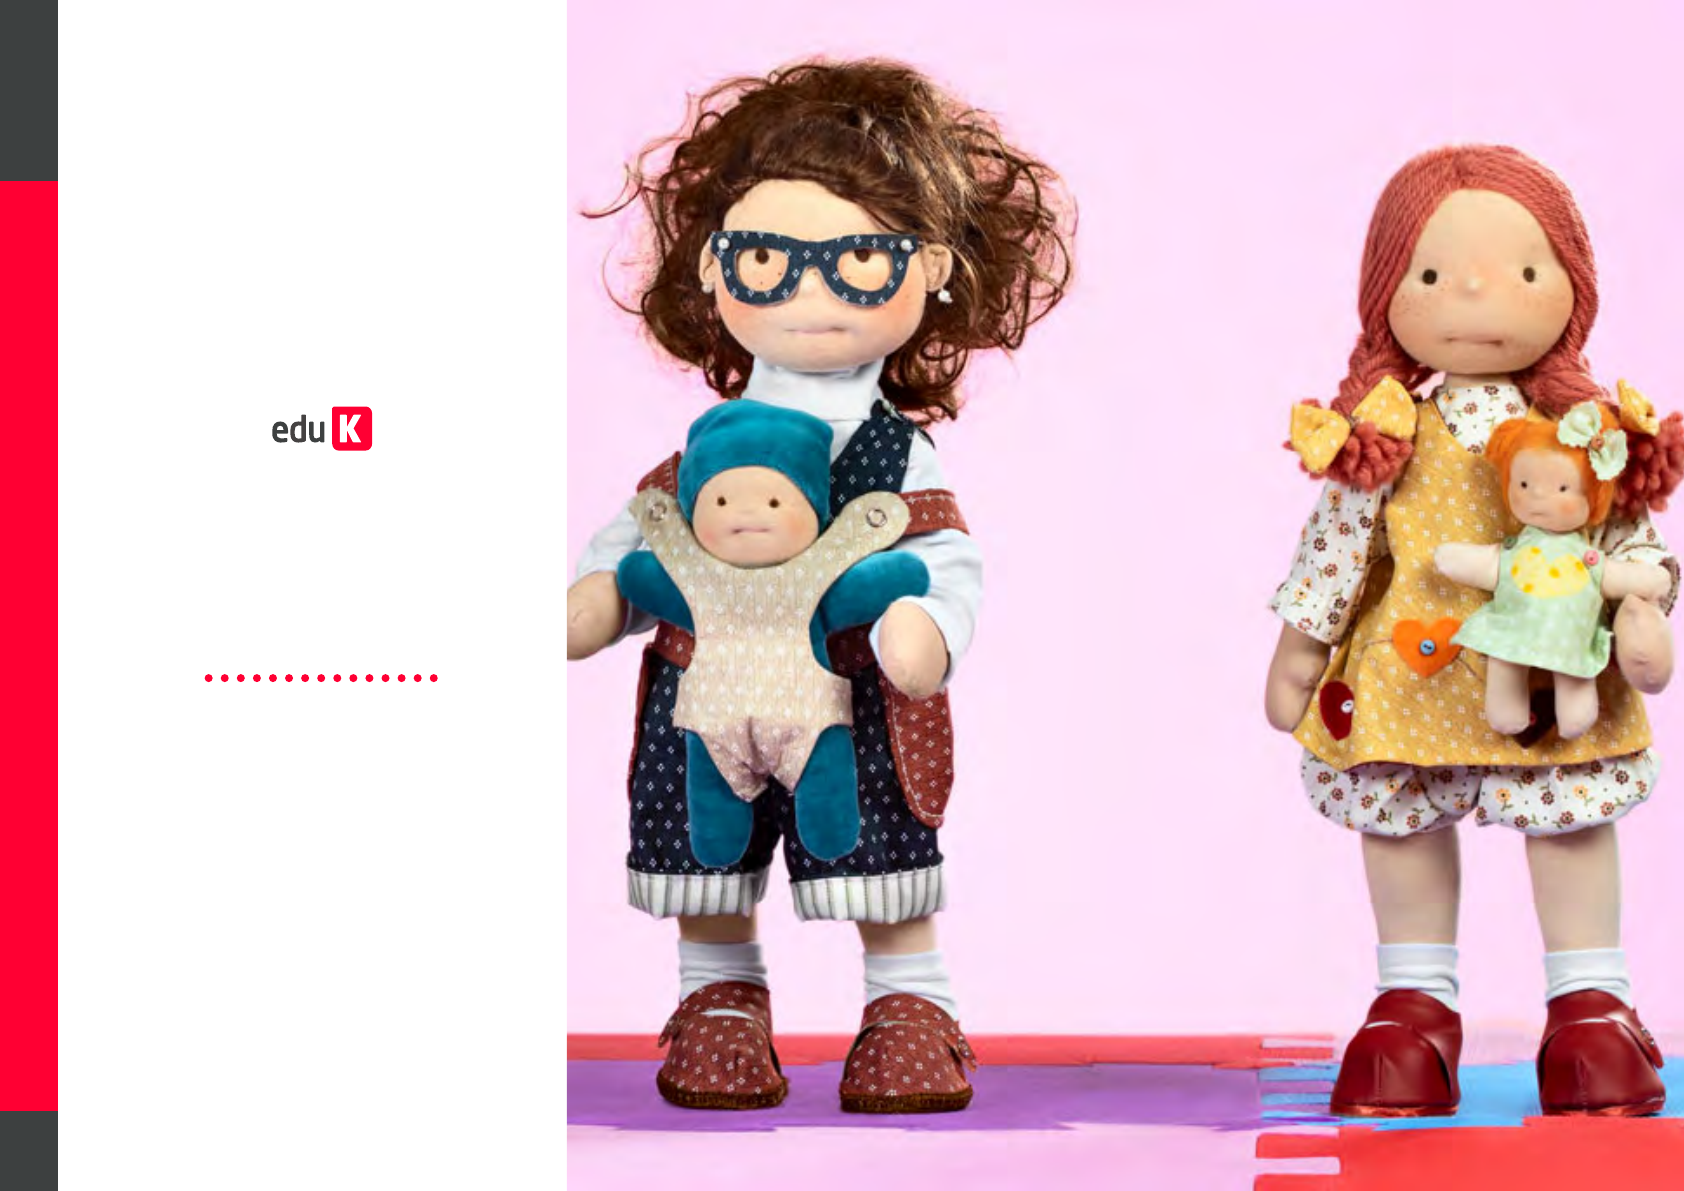 Vestido de boneca com molde para download  Roupas de boneca de pano,  Vestidos de boneca, Roupas para bonecas